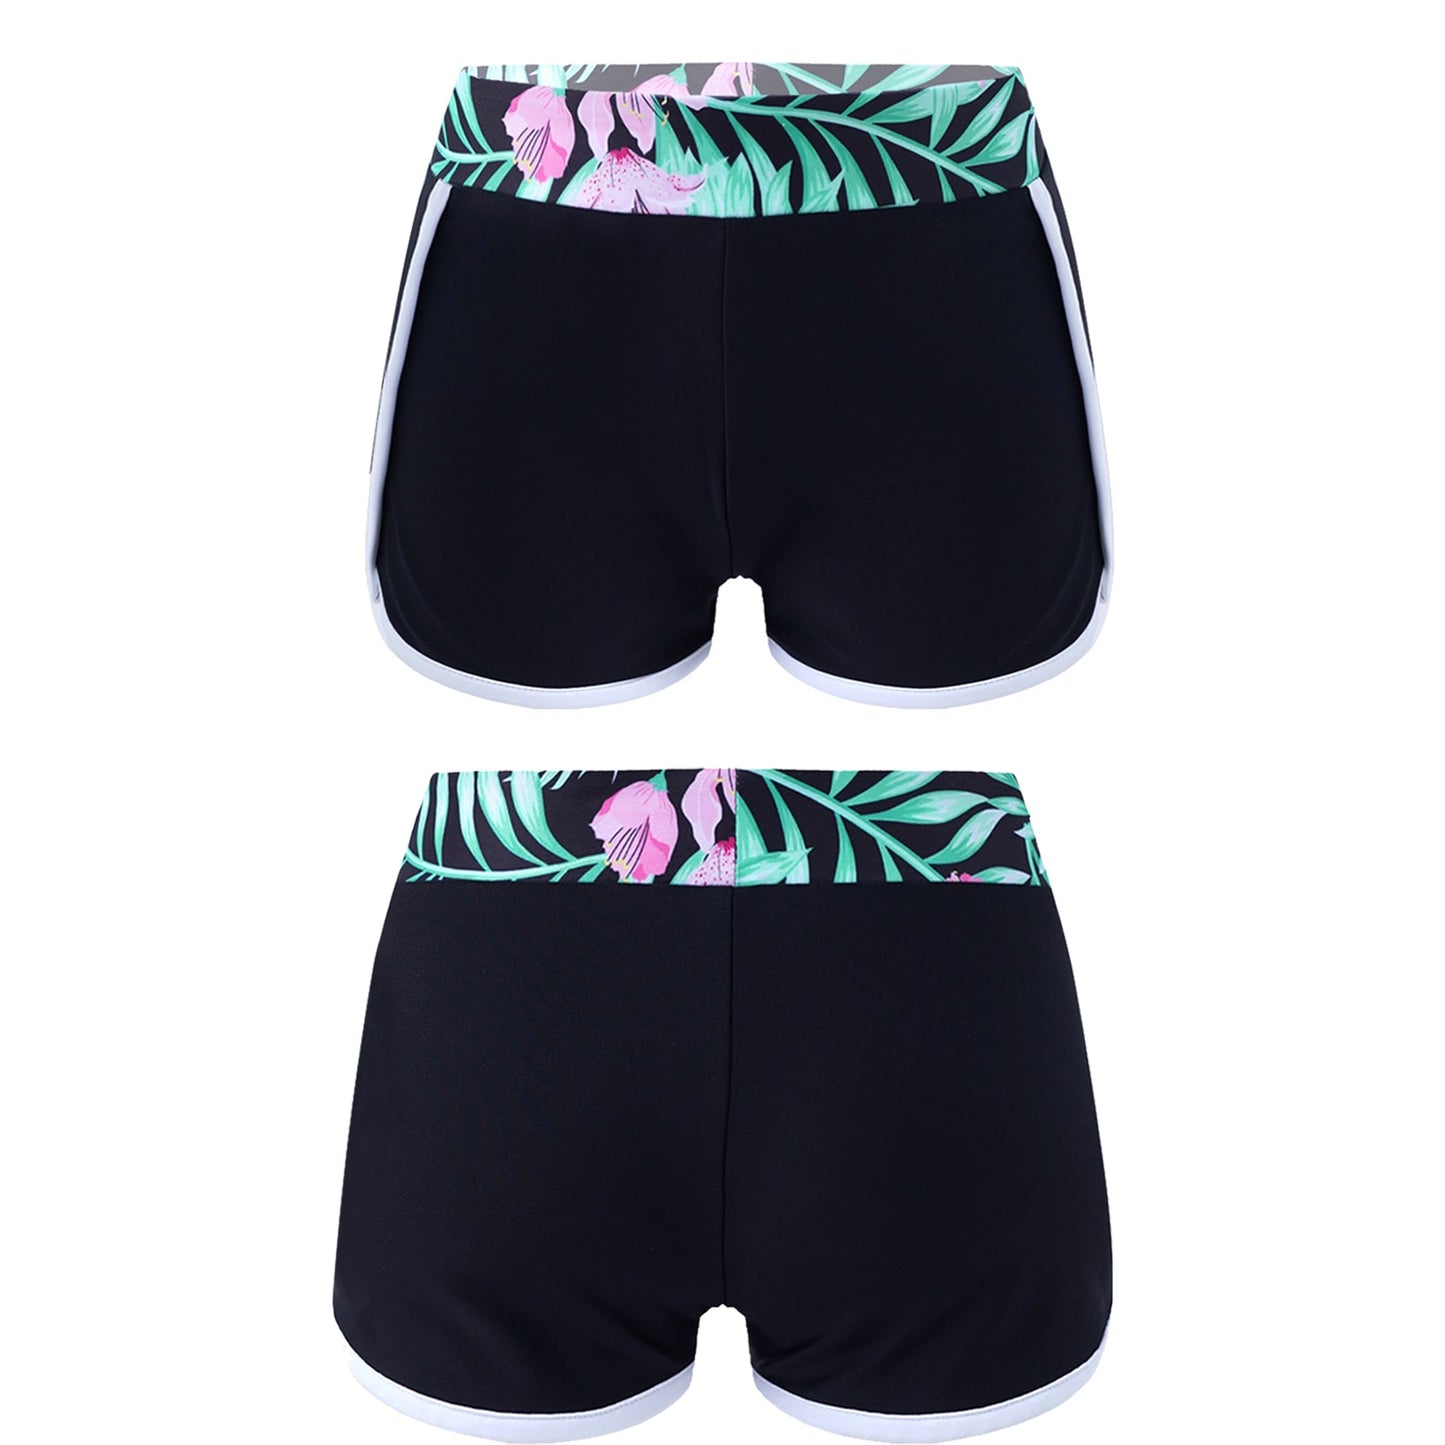 Kids Girls Printed Swim Shorts Swimwear Summer New Shorts Beach Pool Swimming Short